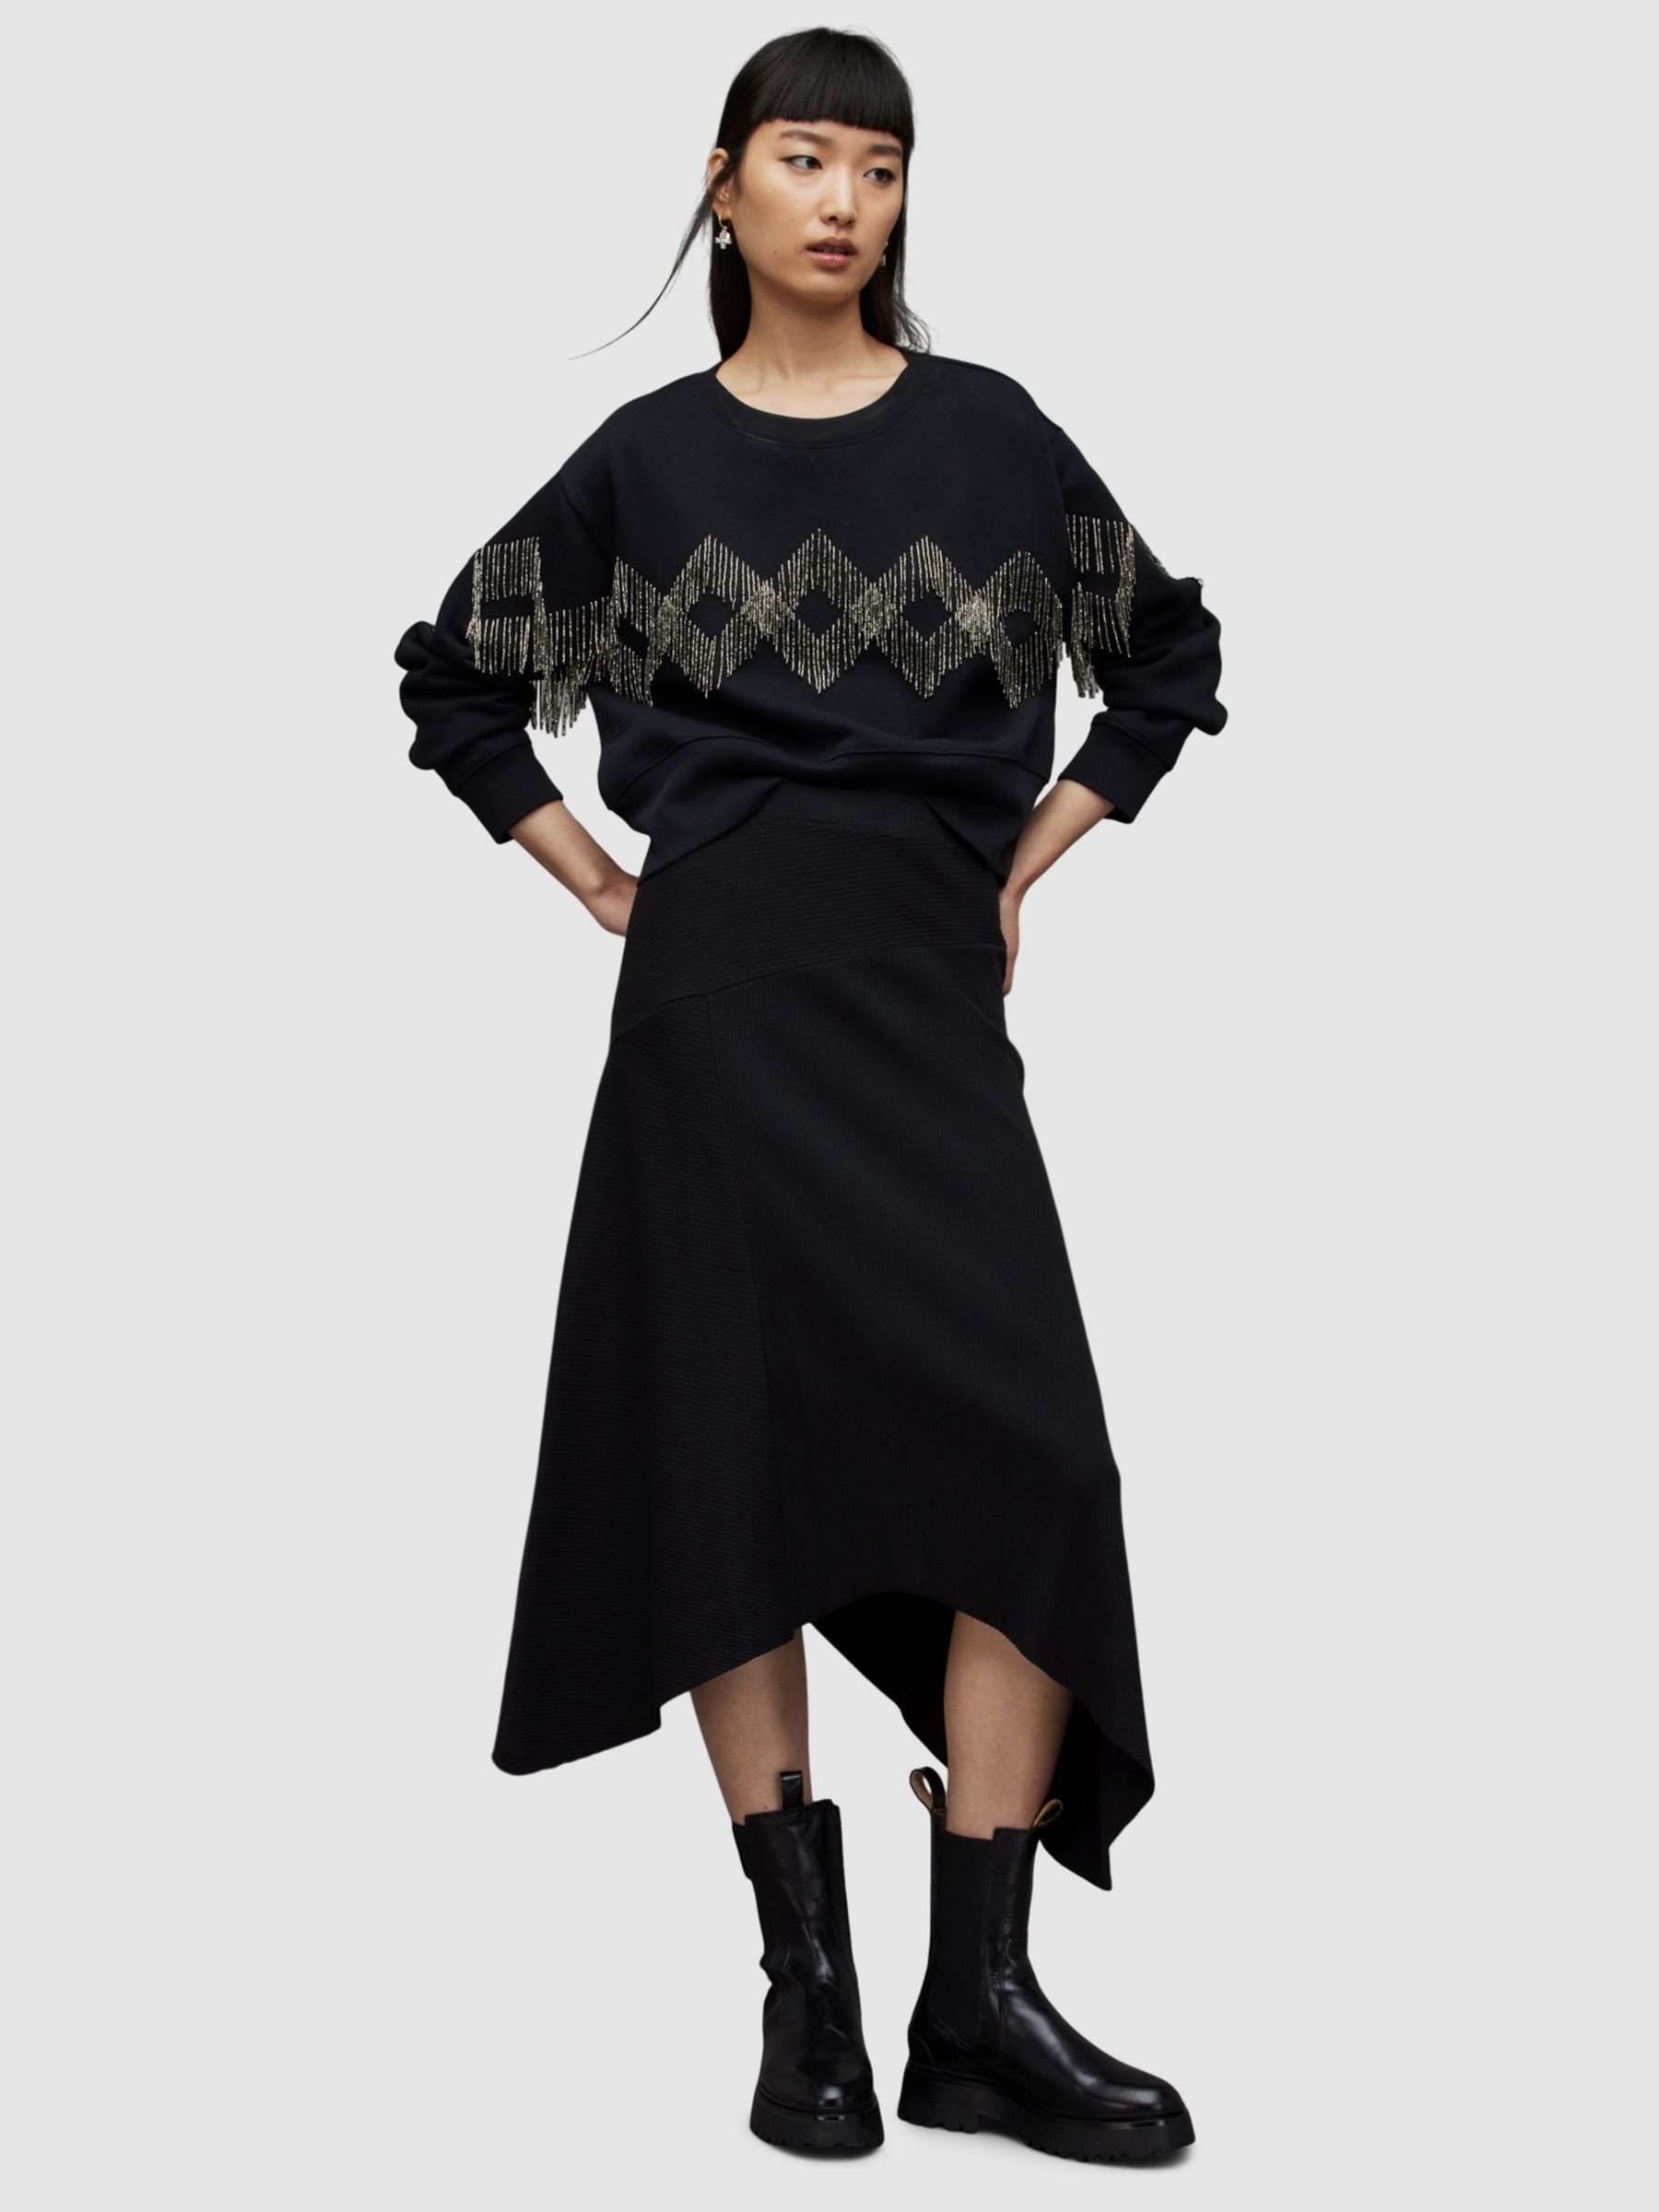 Buy AllSaints Gia Skirt, Black Online at johnlewis.com